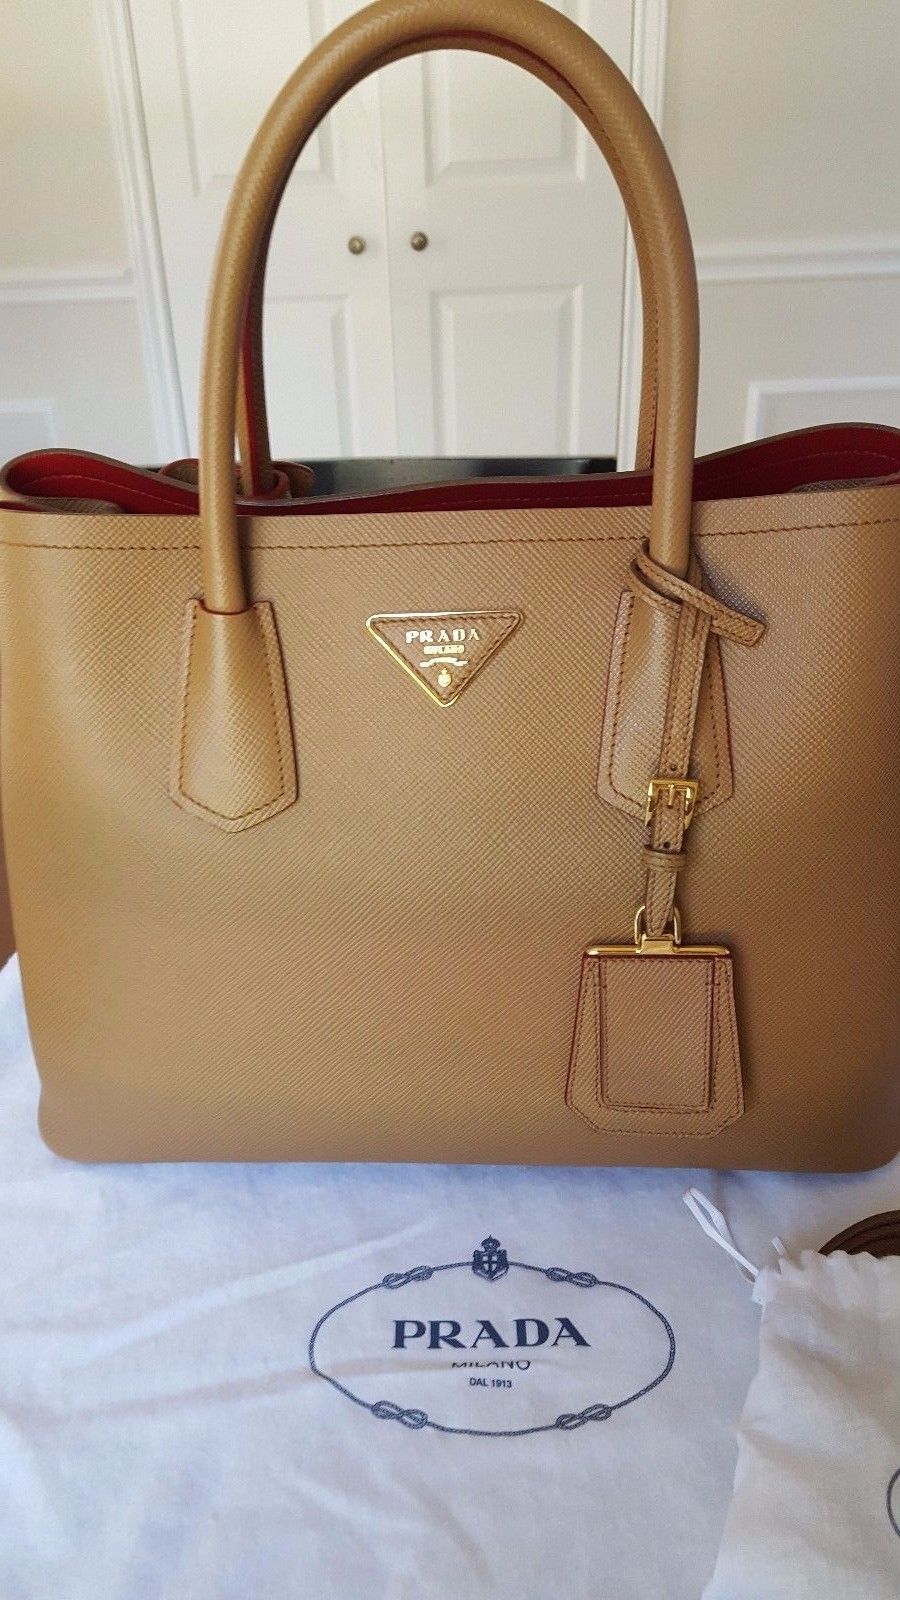 Prada : Top 5 des sacs les plus chers récemment vendus sur eBay à découvrir !